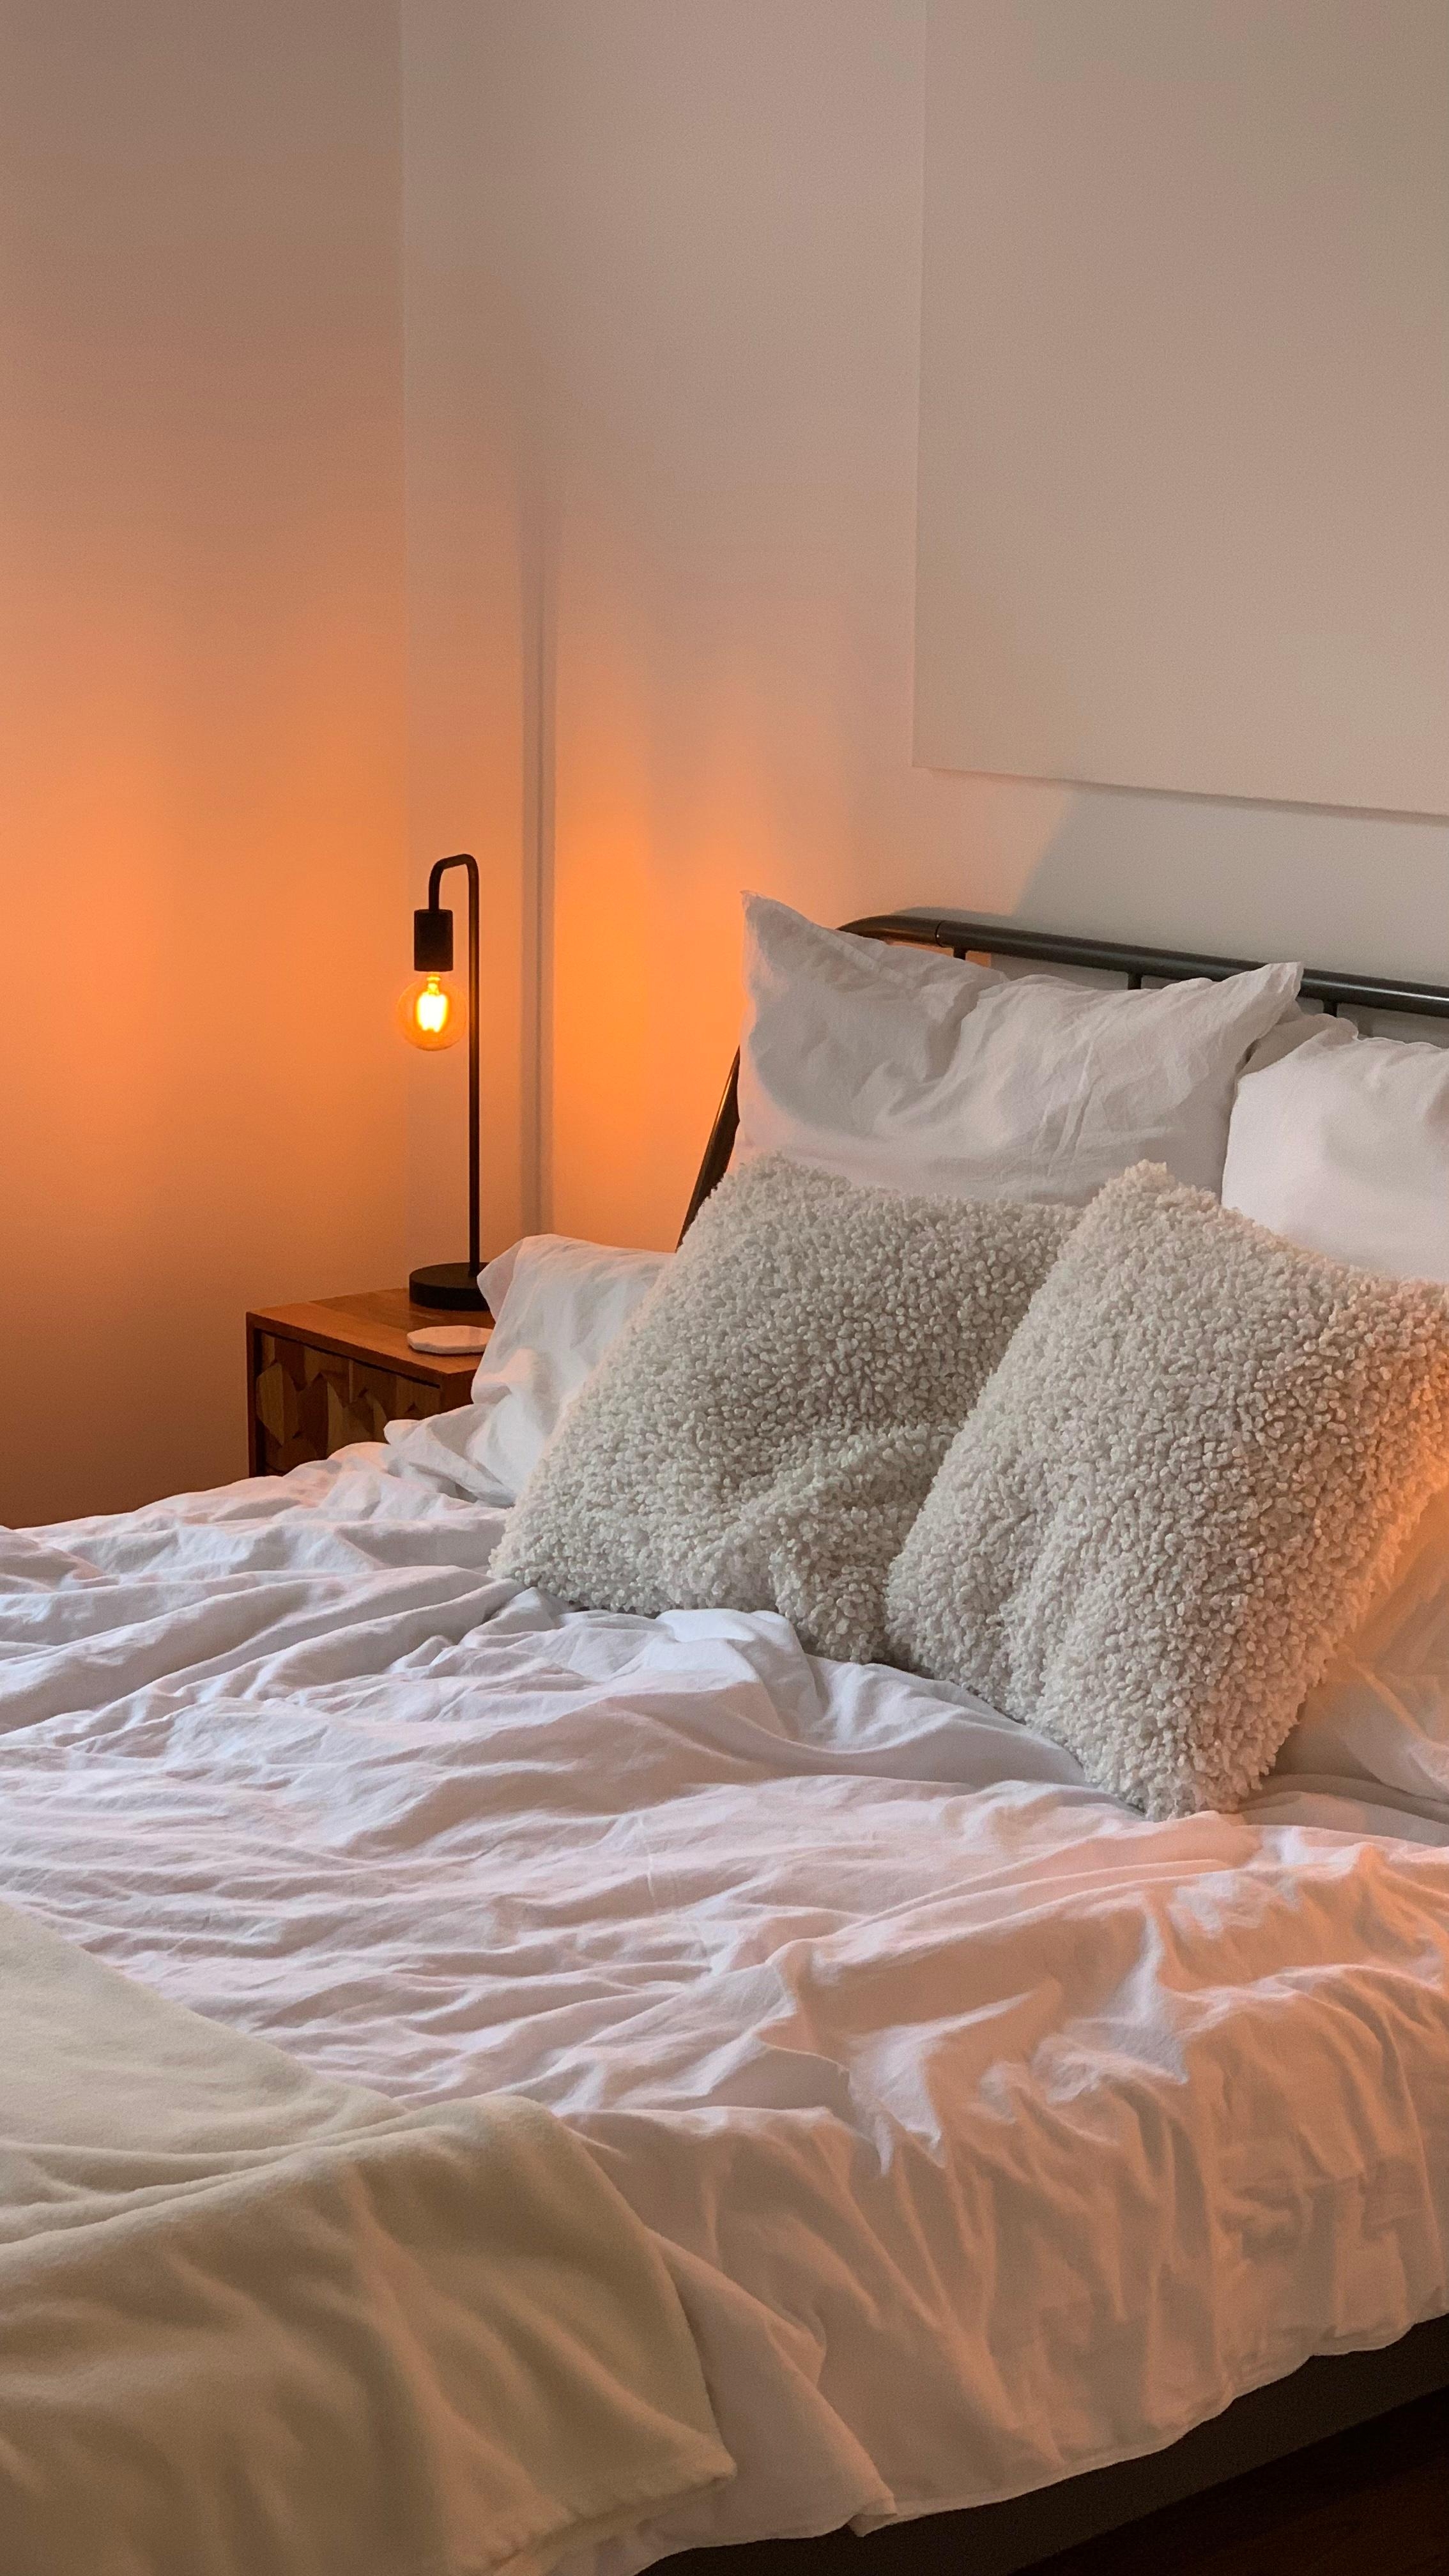 😴😴😴
#schlafzimmer #schlafzimmerinspo #cozy #gemütlich #leuchte #weißebettwäsche #minimalistisch